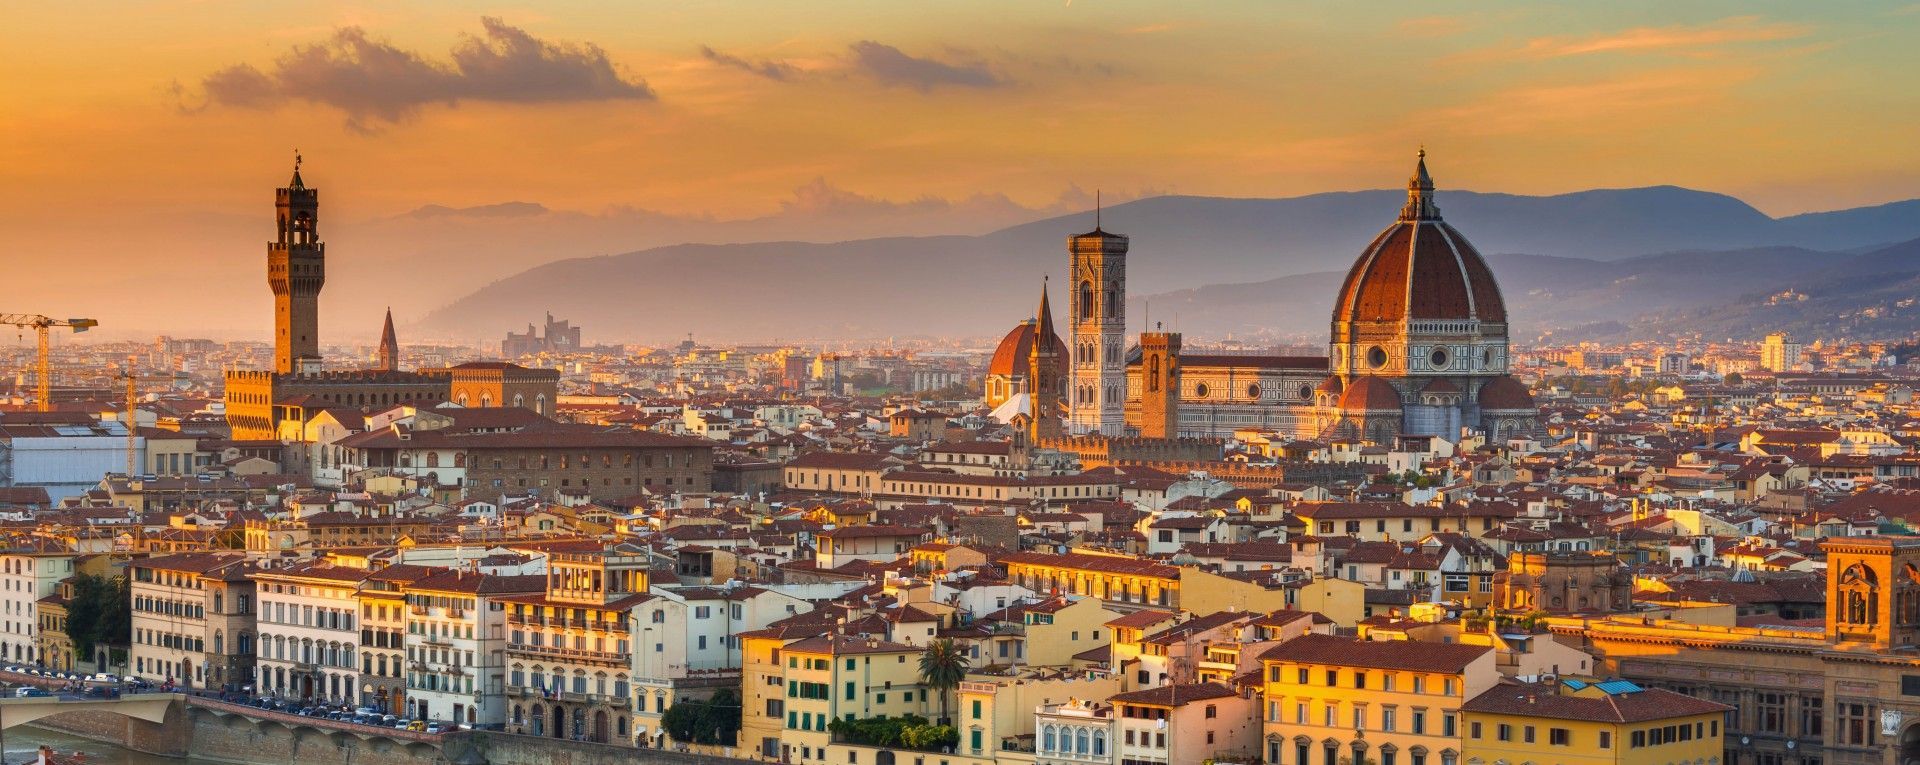 Florenca Italia seu itinerario essencial de fim de semana